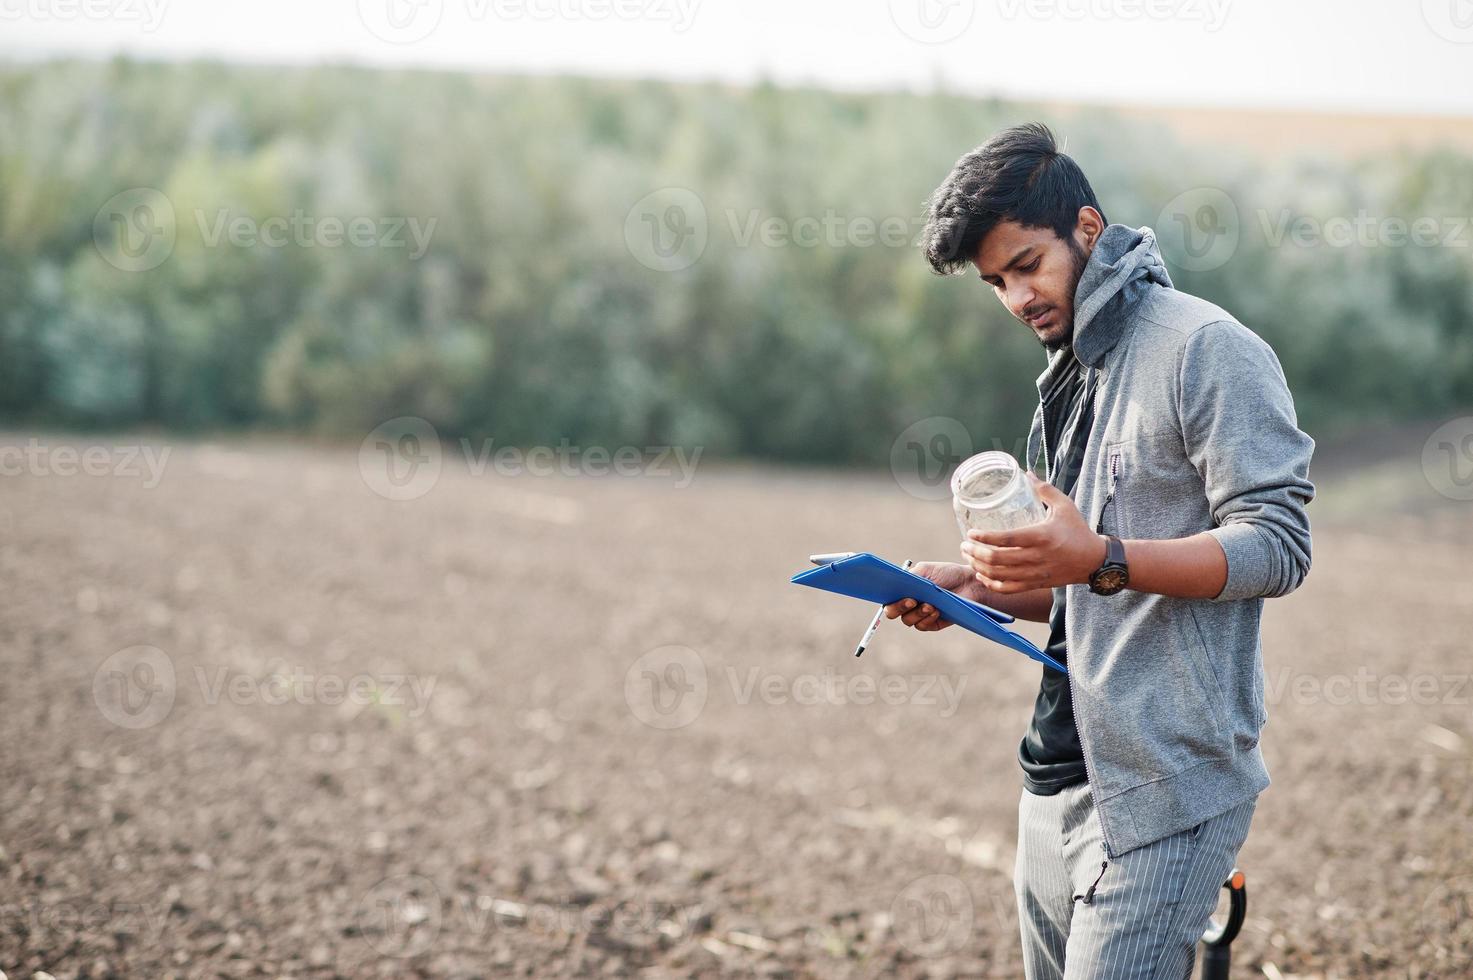 Zuid-Aziatische landbouwkundige boer met schop die zwarte grond inspecteert. landbouwproductieconcept. foto